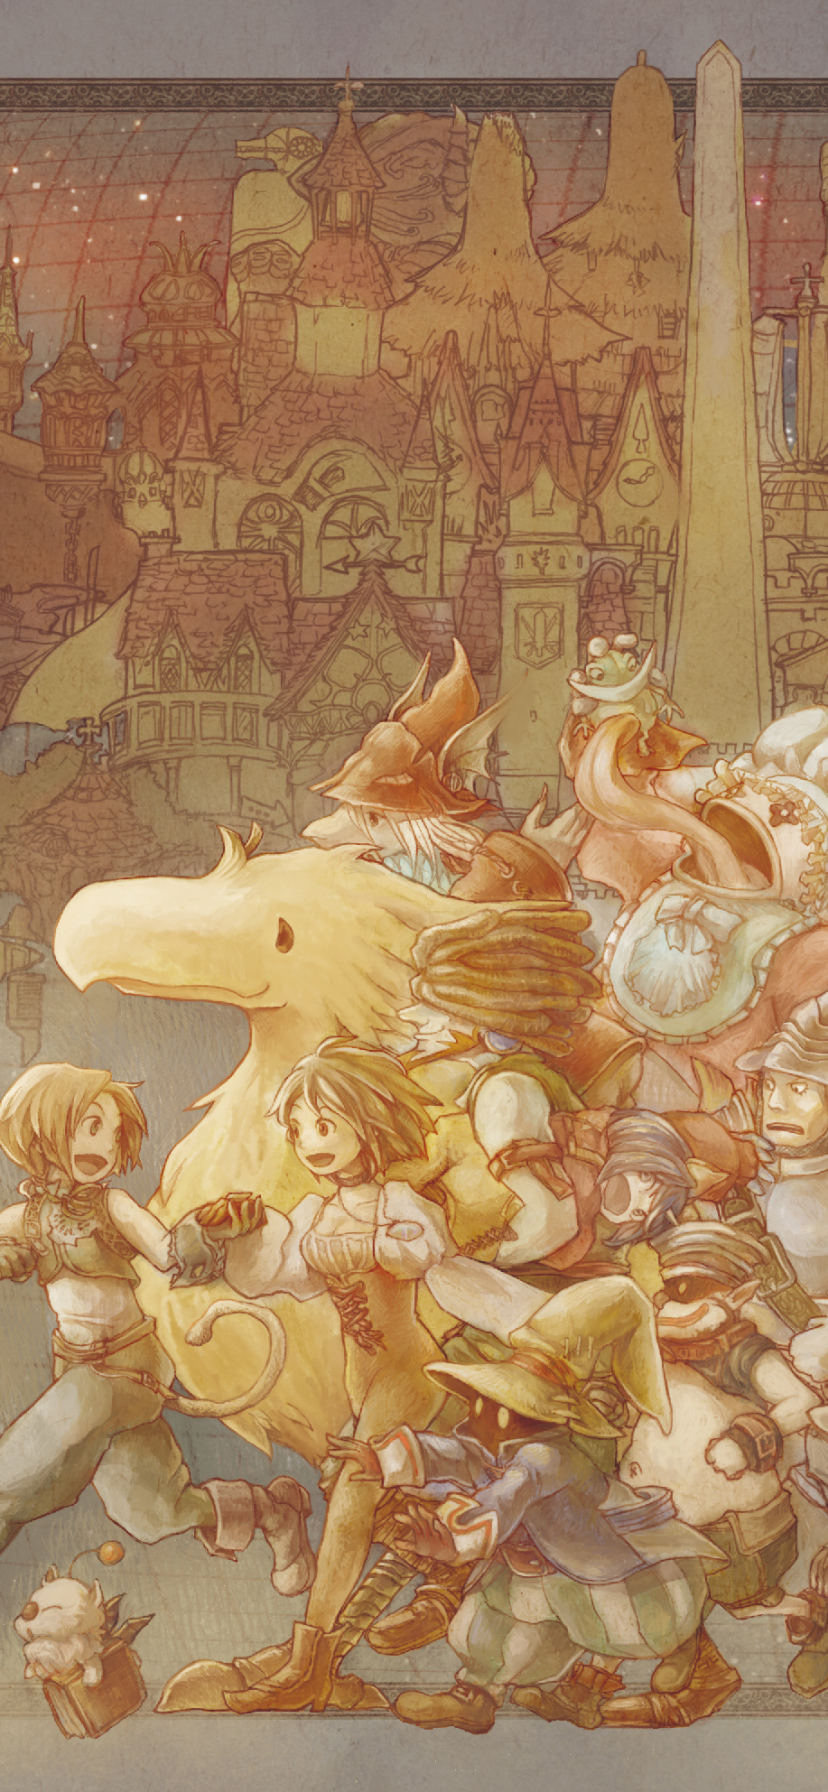 Final Fantasy IX Phone Wallpaper